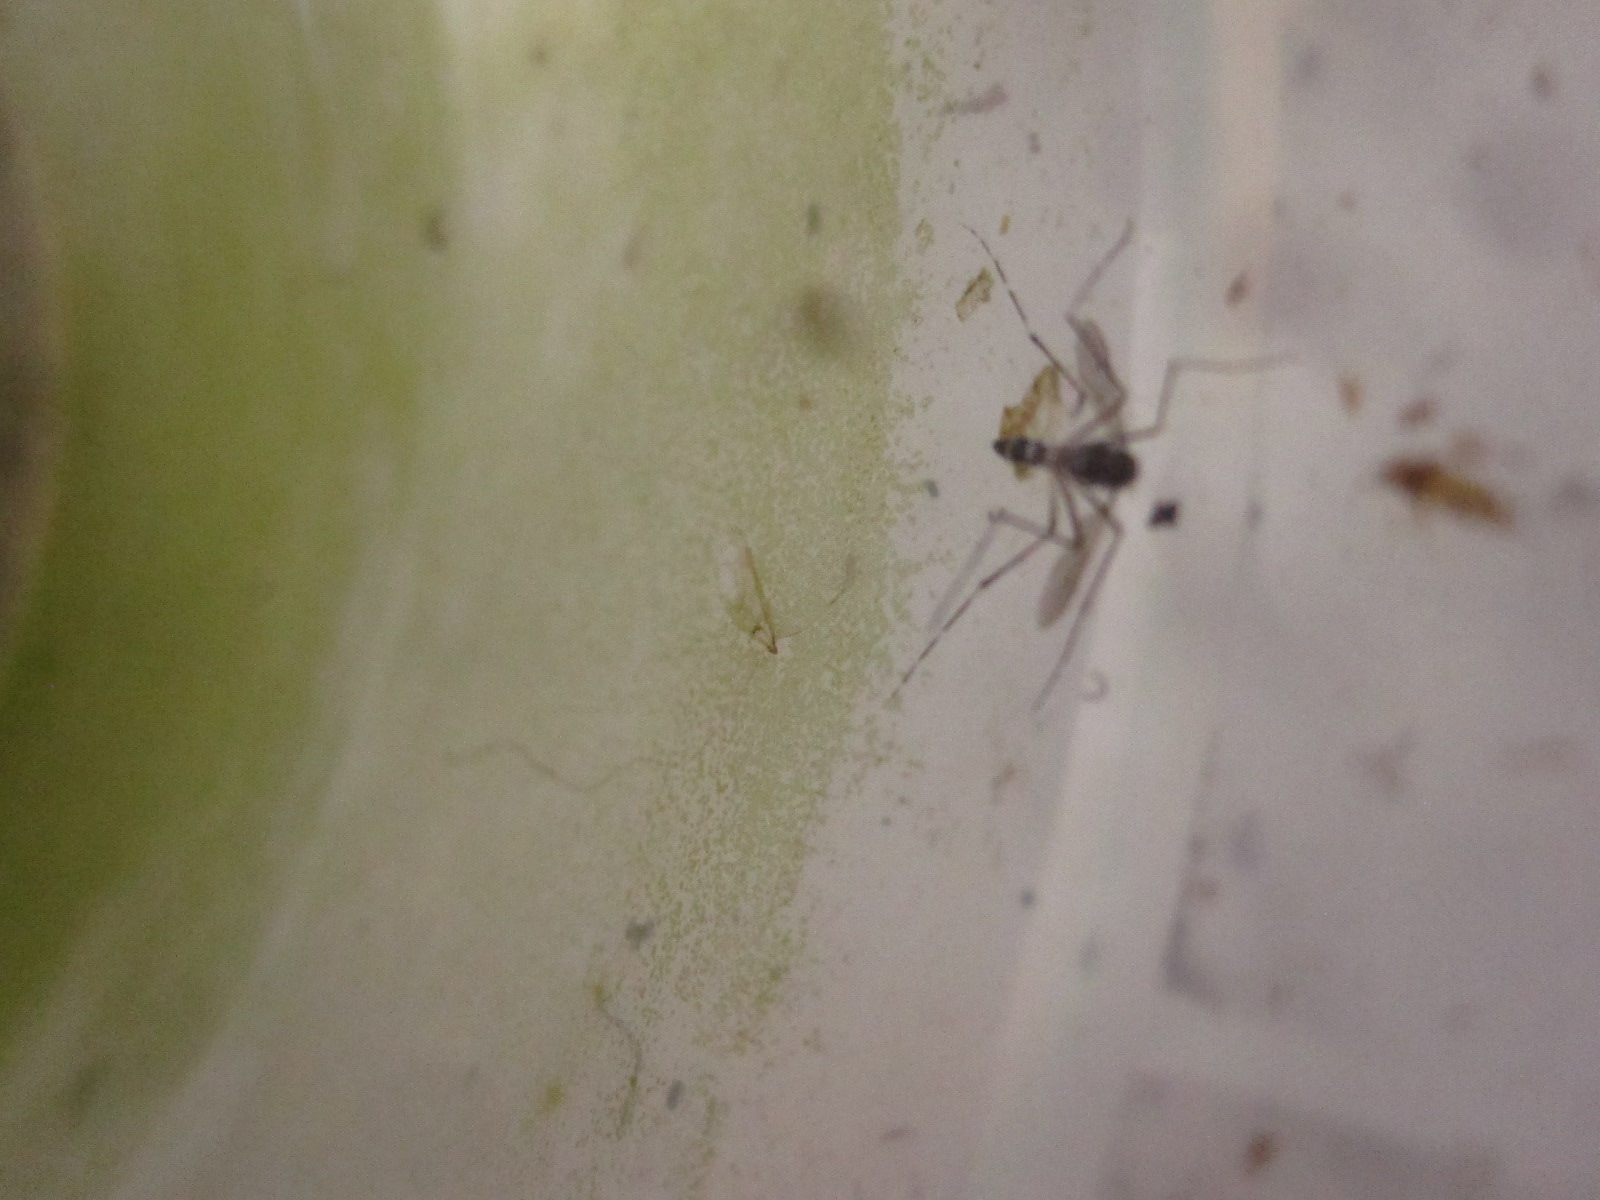 容器の縁に羽化した蚊の成虫の死骸が散乱している